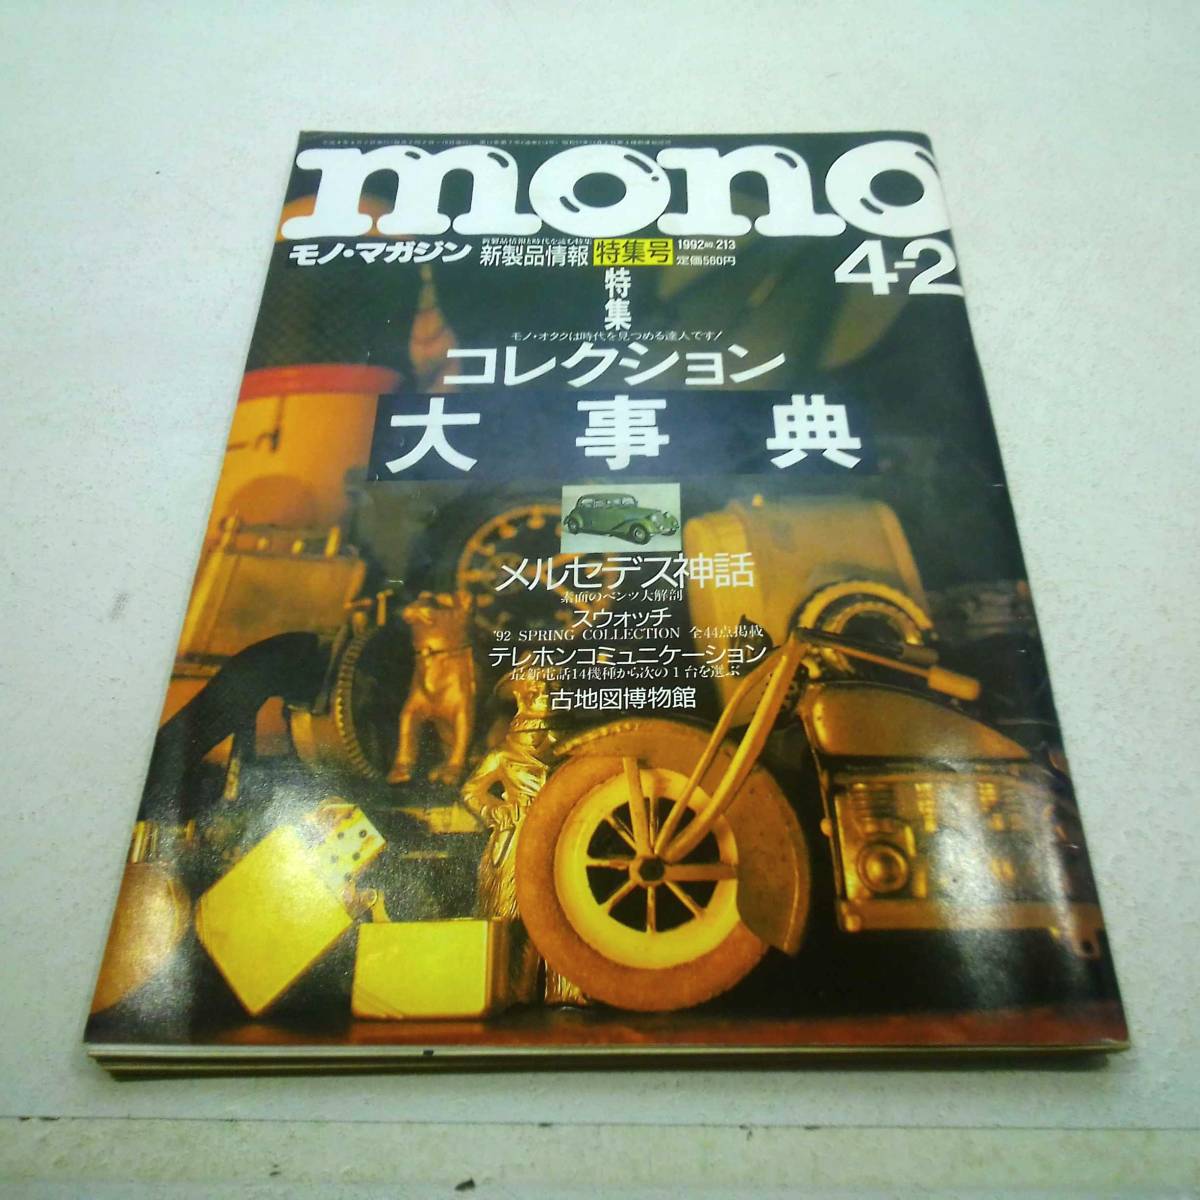  моно * журнал 1992 год 4/2 номер NO.213 новый информация о продукте специальный выпуск номер 